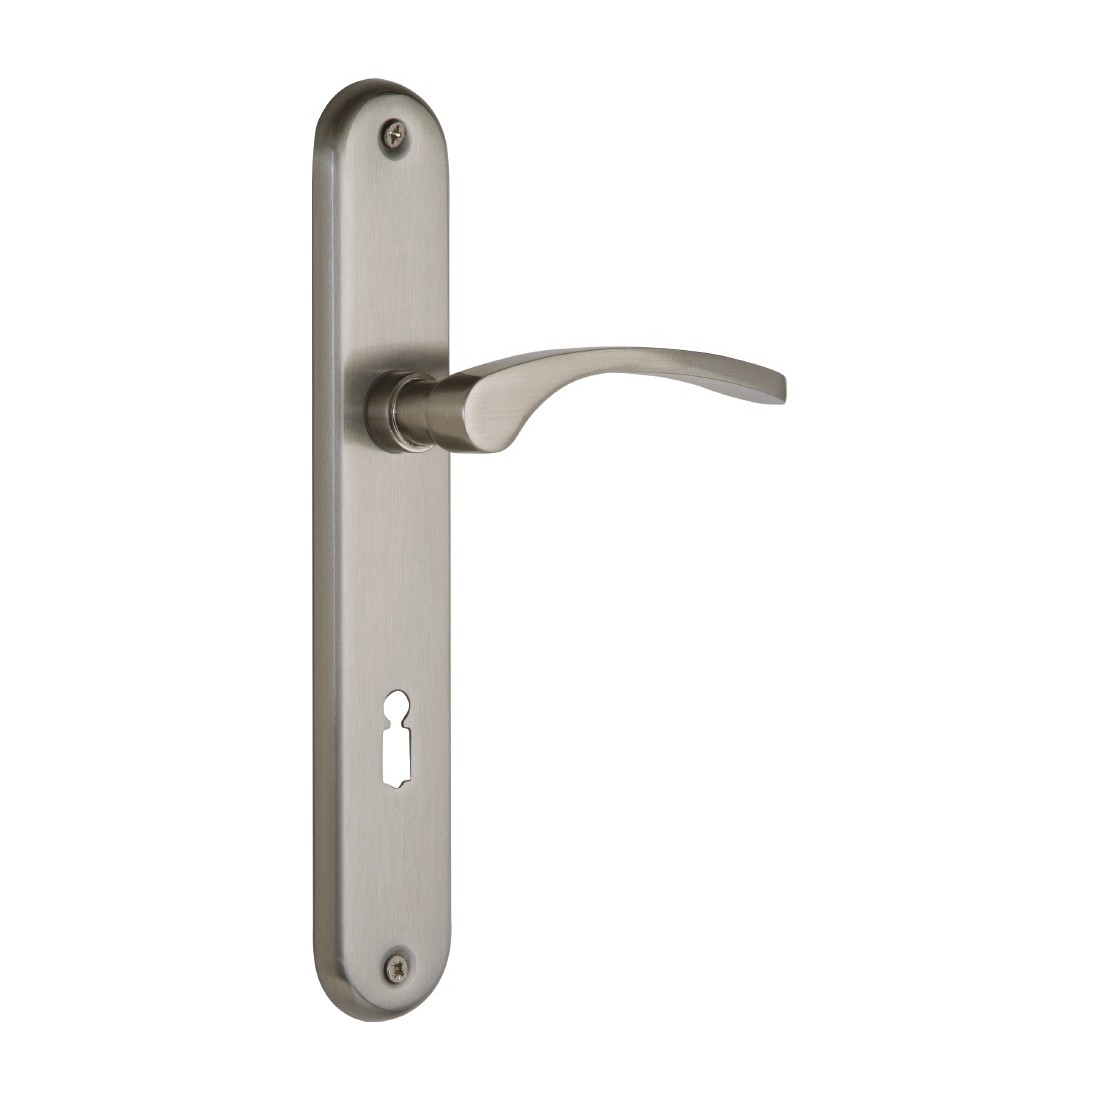 CLEVER MITGEDACHT : Protection de poignée de porte avec fonction